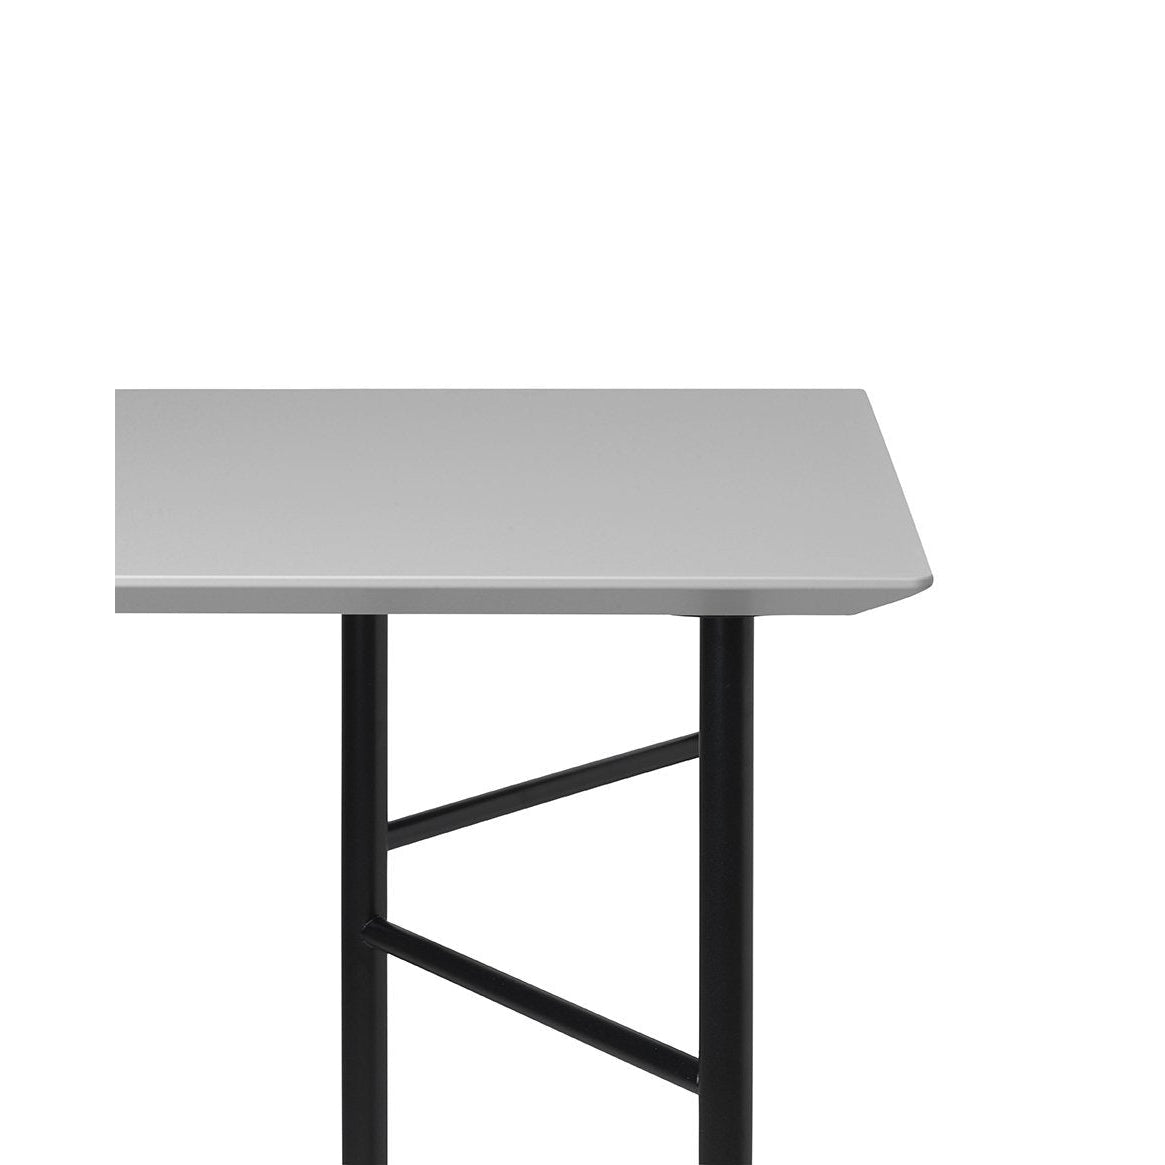 Ferm Living Mingle Desk, gris claro, 135 cm